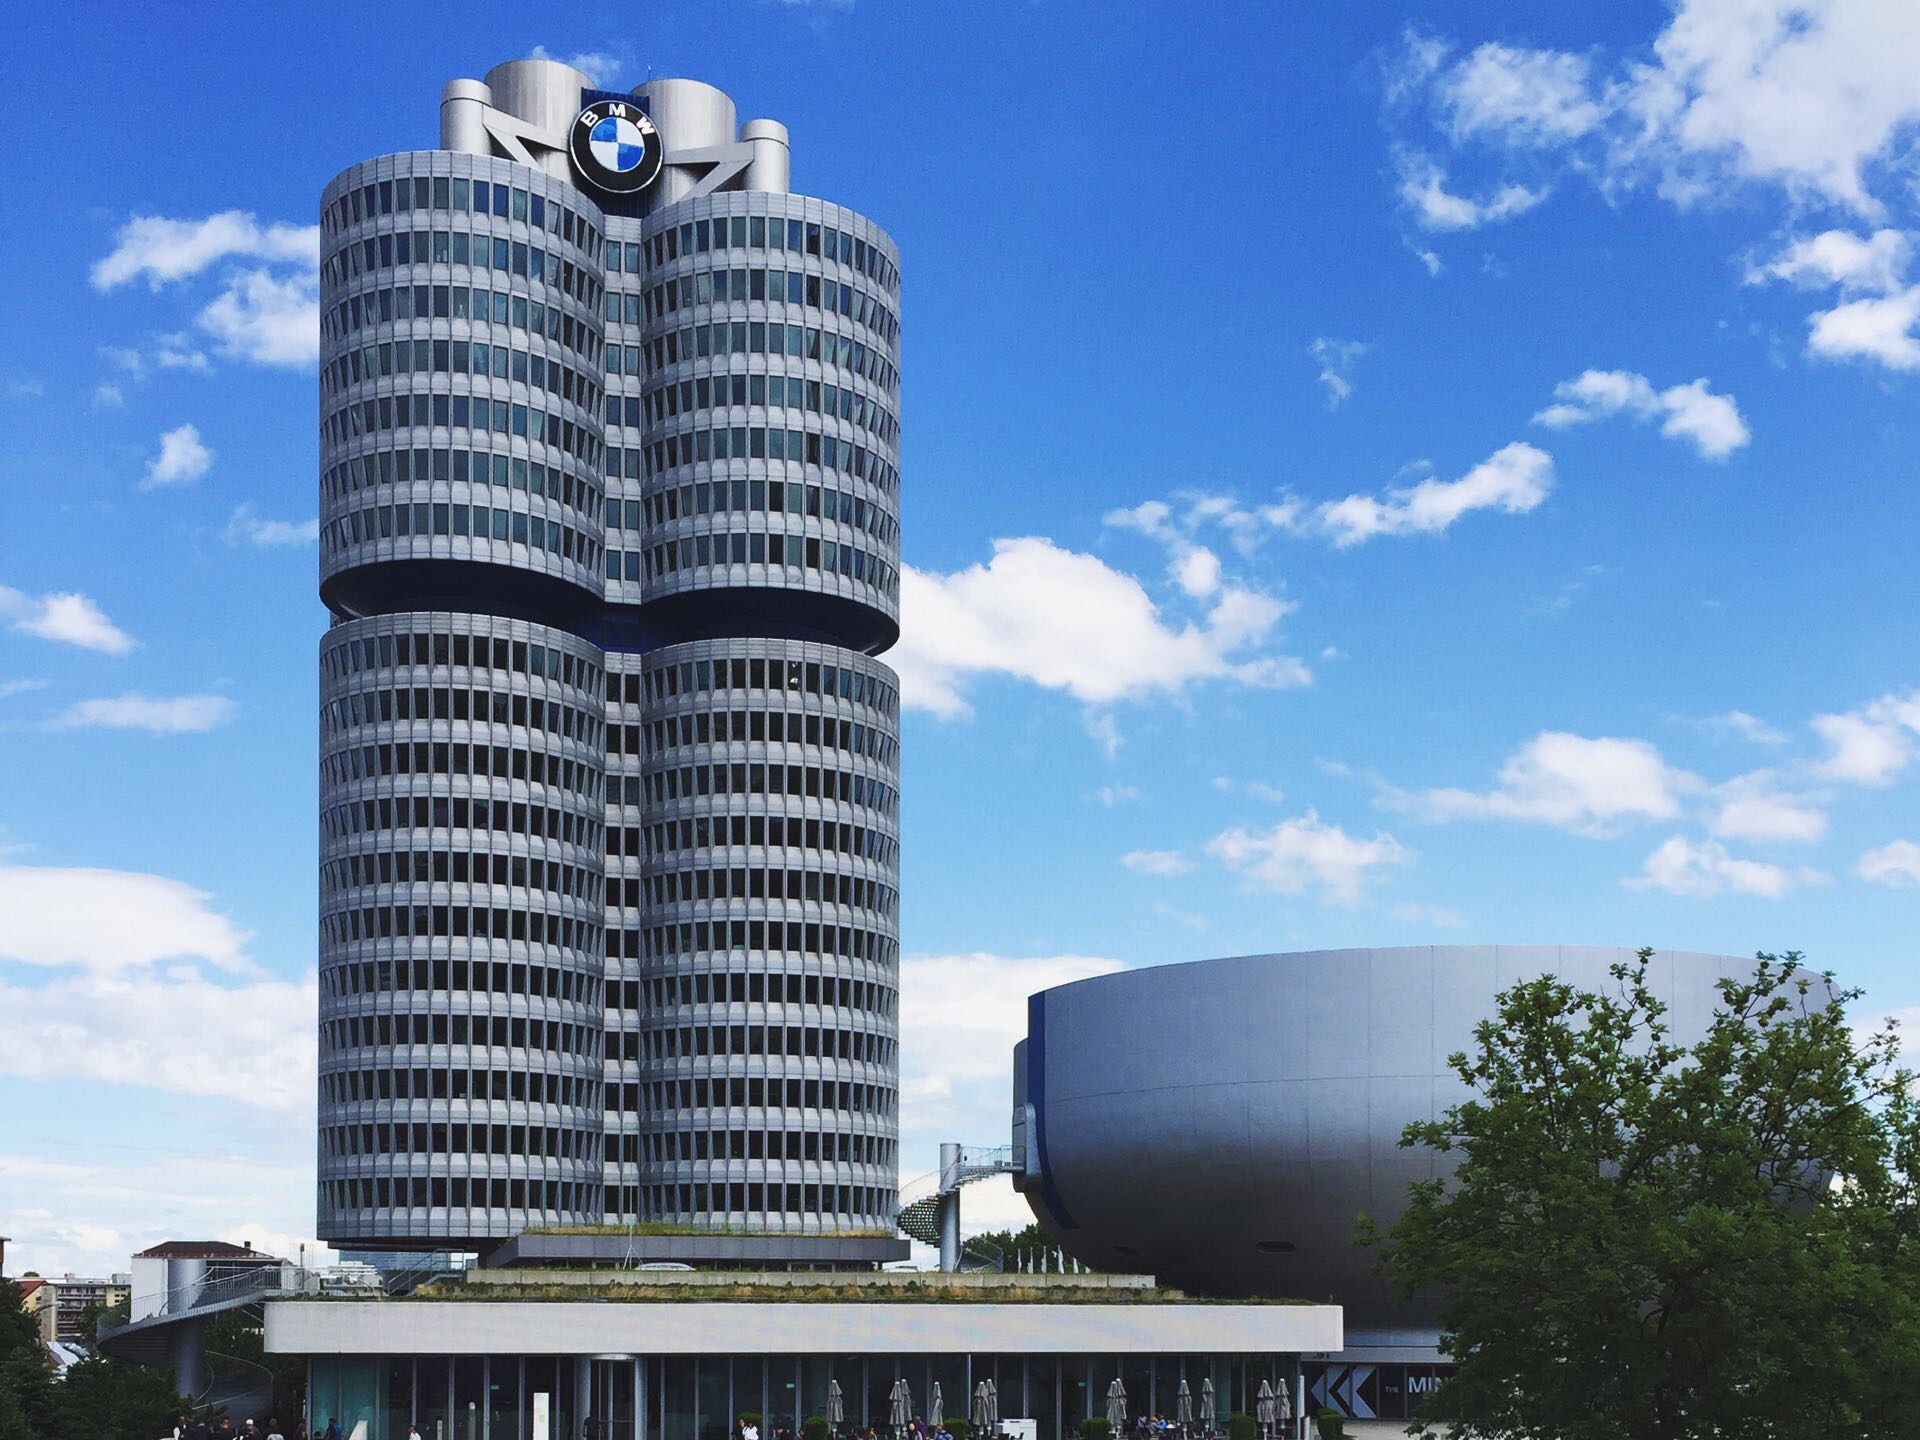 德国宝马博物馆  来德国一定要来看看关于车的博物馆。最出名的莫过于宝马和奔驰的汽车博物馆。懂车的看得